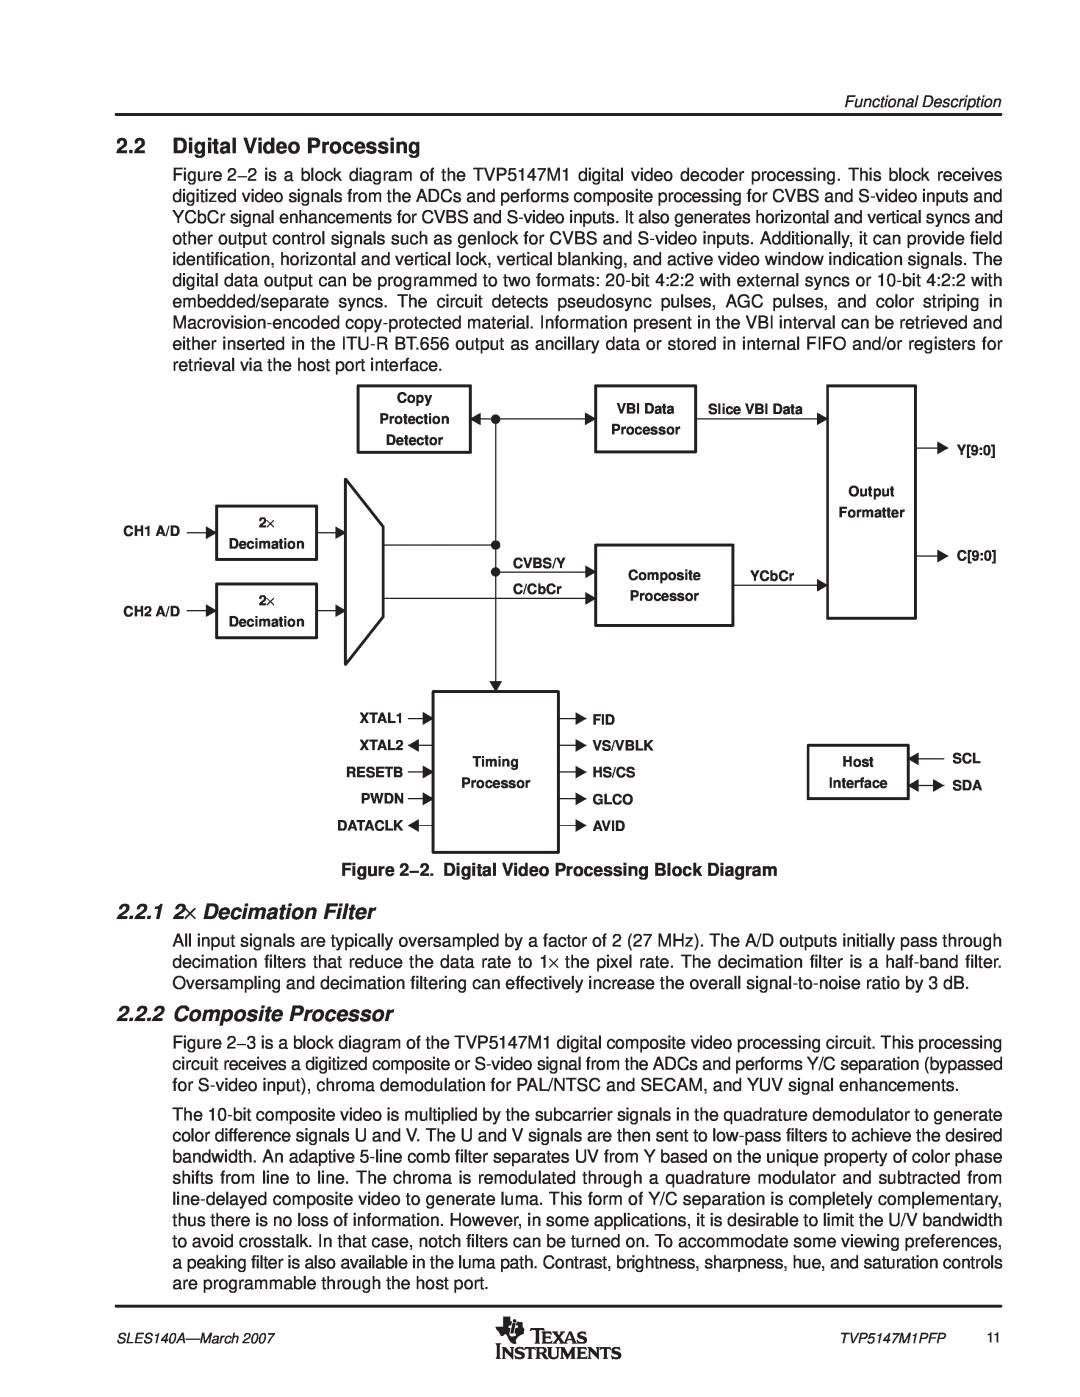 Texas Instruments TVP5147M1PFP manual Digital Video Processing, 2.2.1 2⋅ Decimation Filter, Composite Processor 